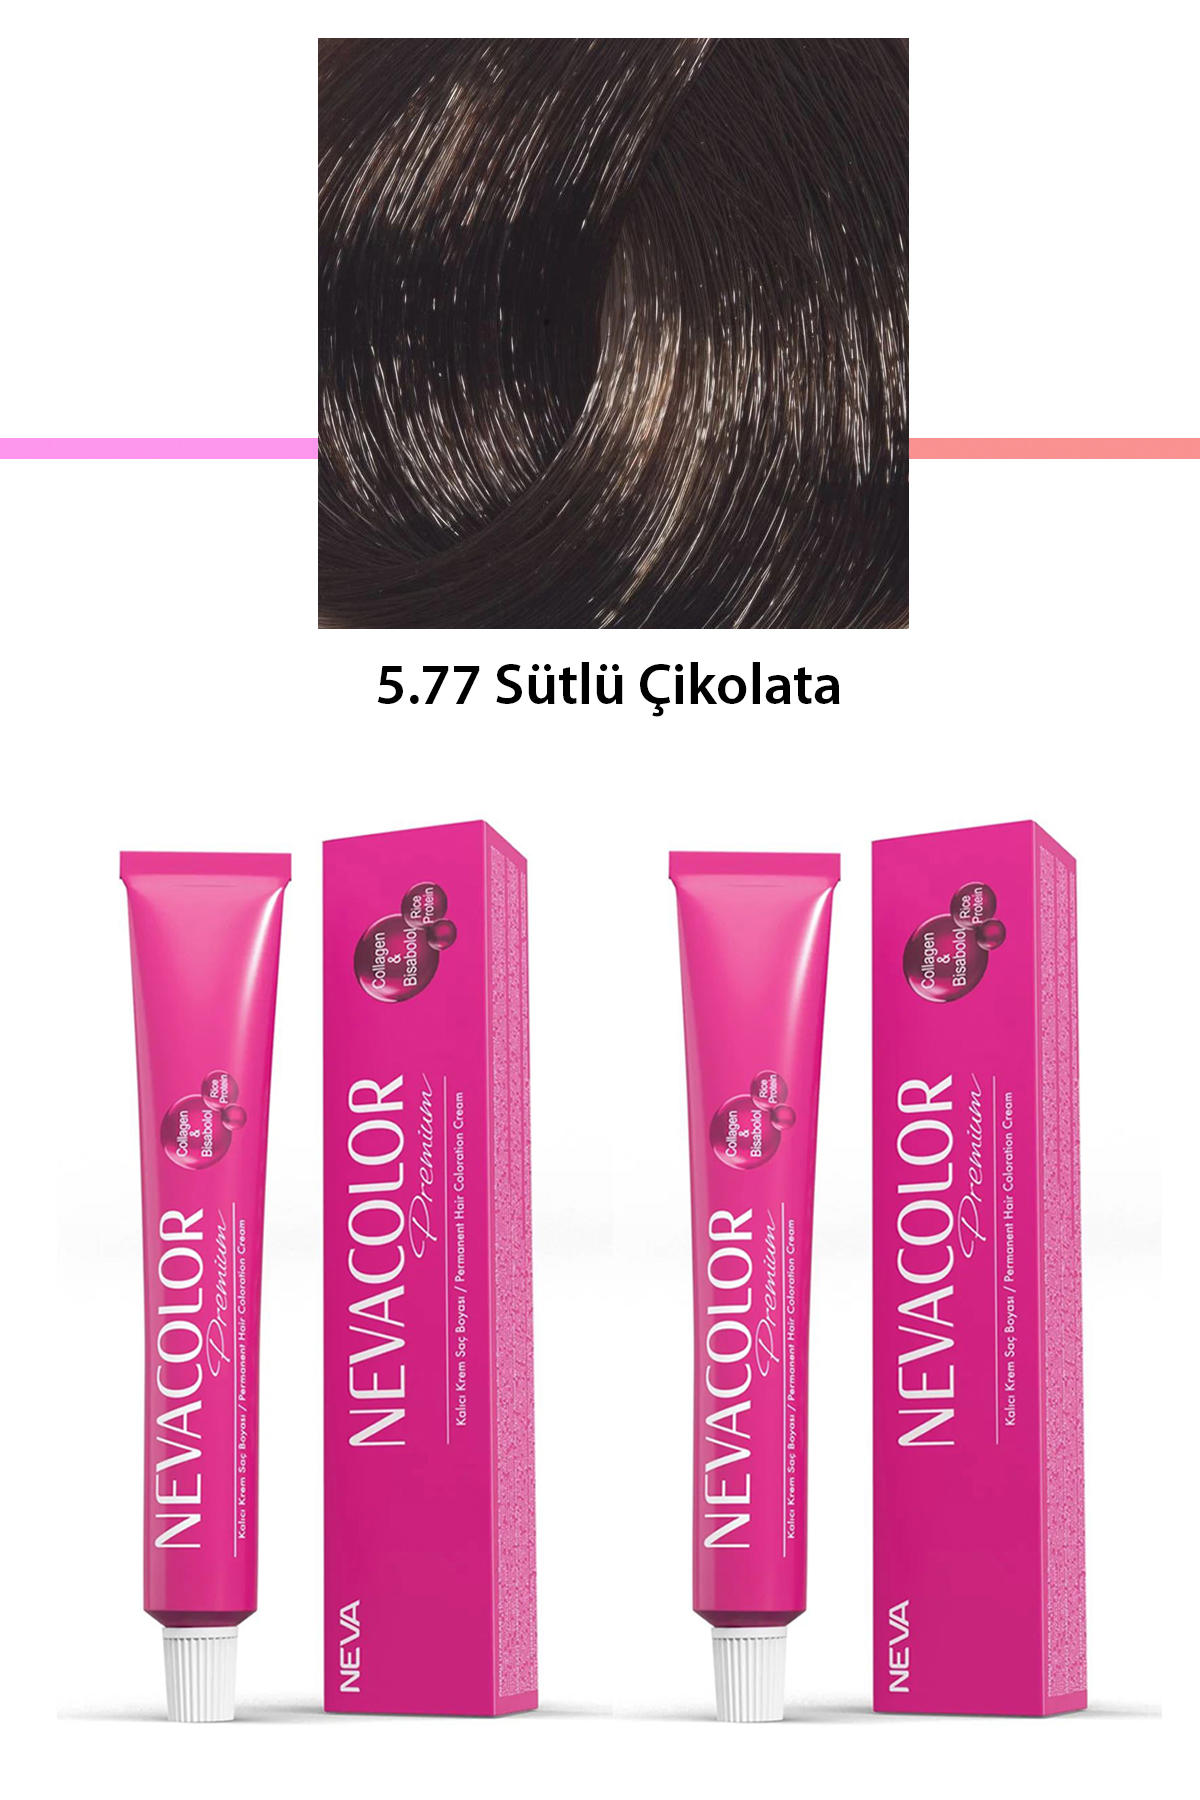 Nevacolor 5.77 Sütlü Çikolata Organik Krem Saç Boyası 50 gr